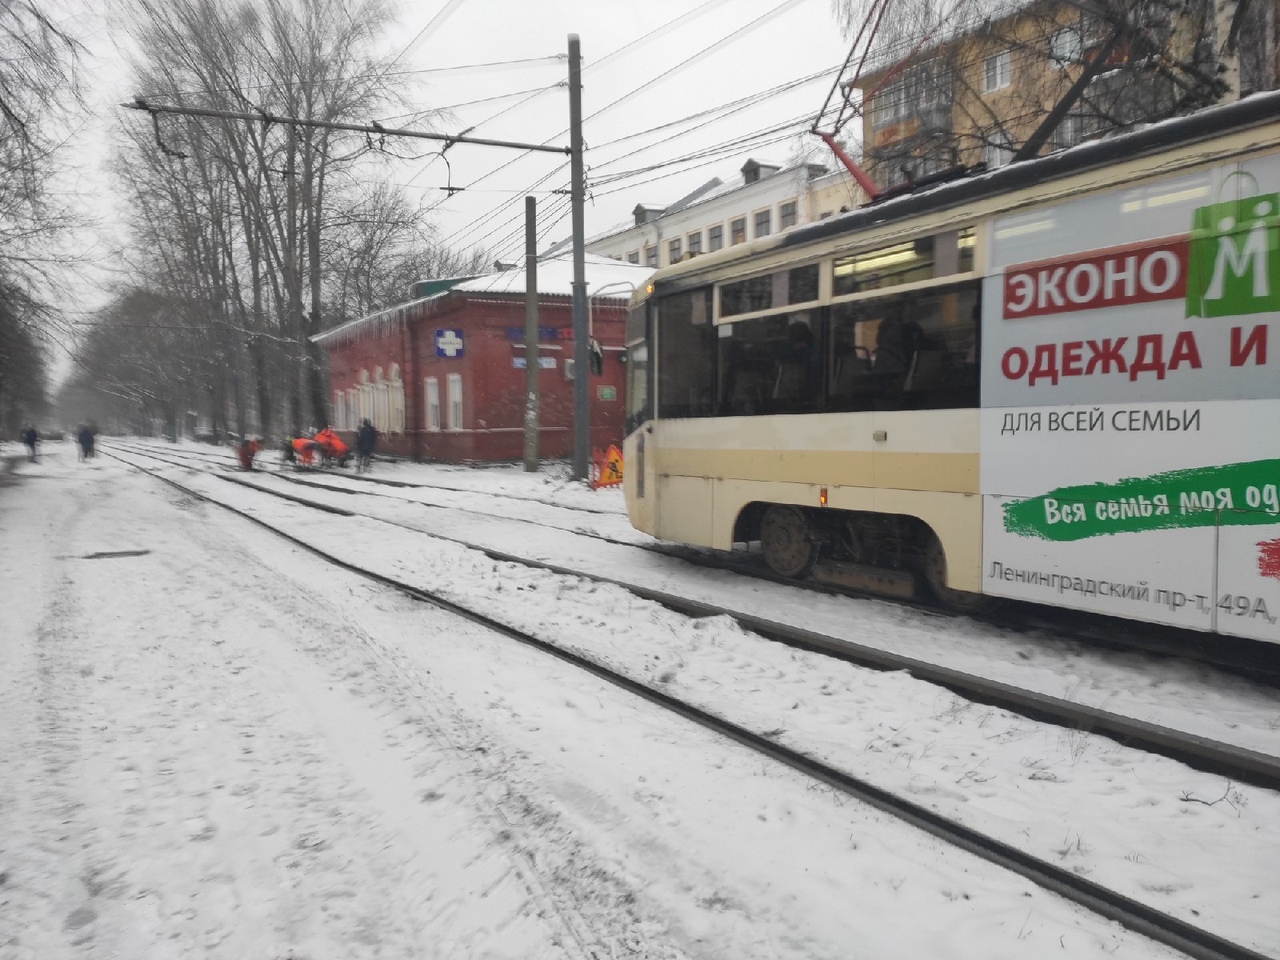 В утренний час пик намертво встали трамваи: ярославцы о ЧП